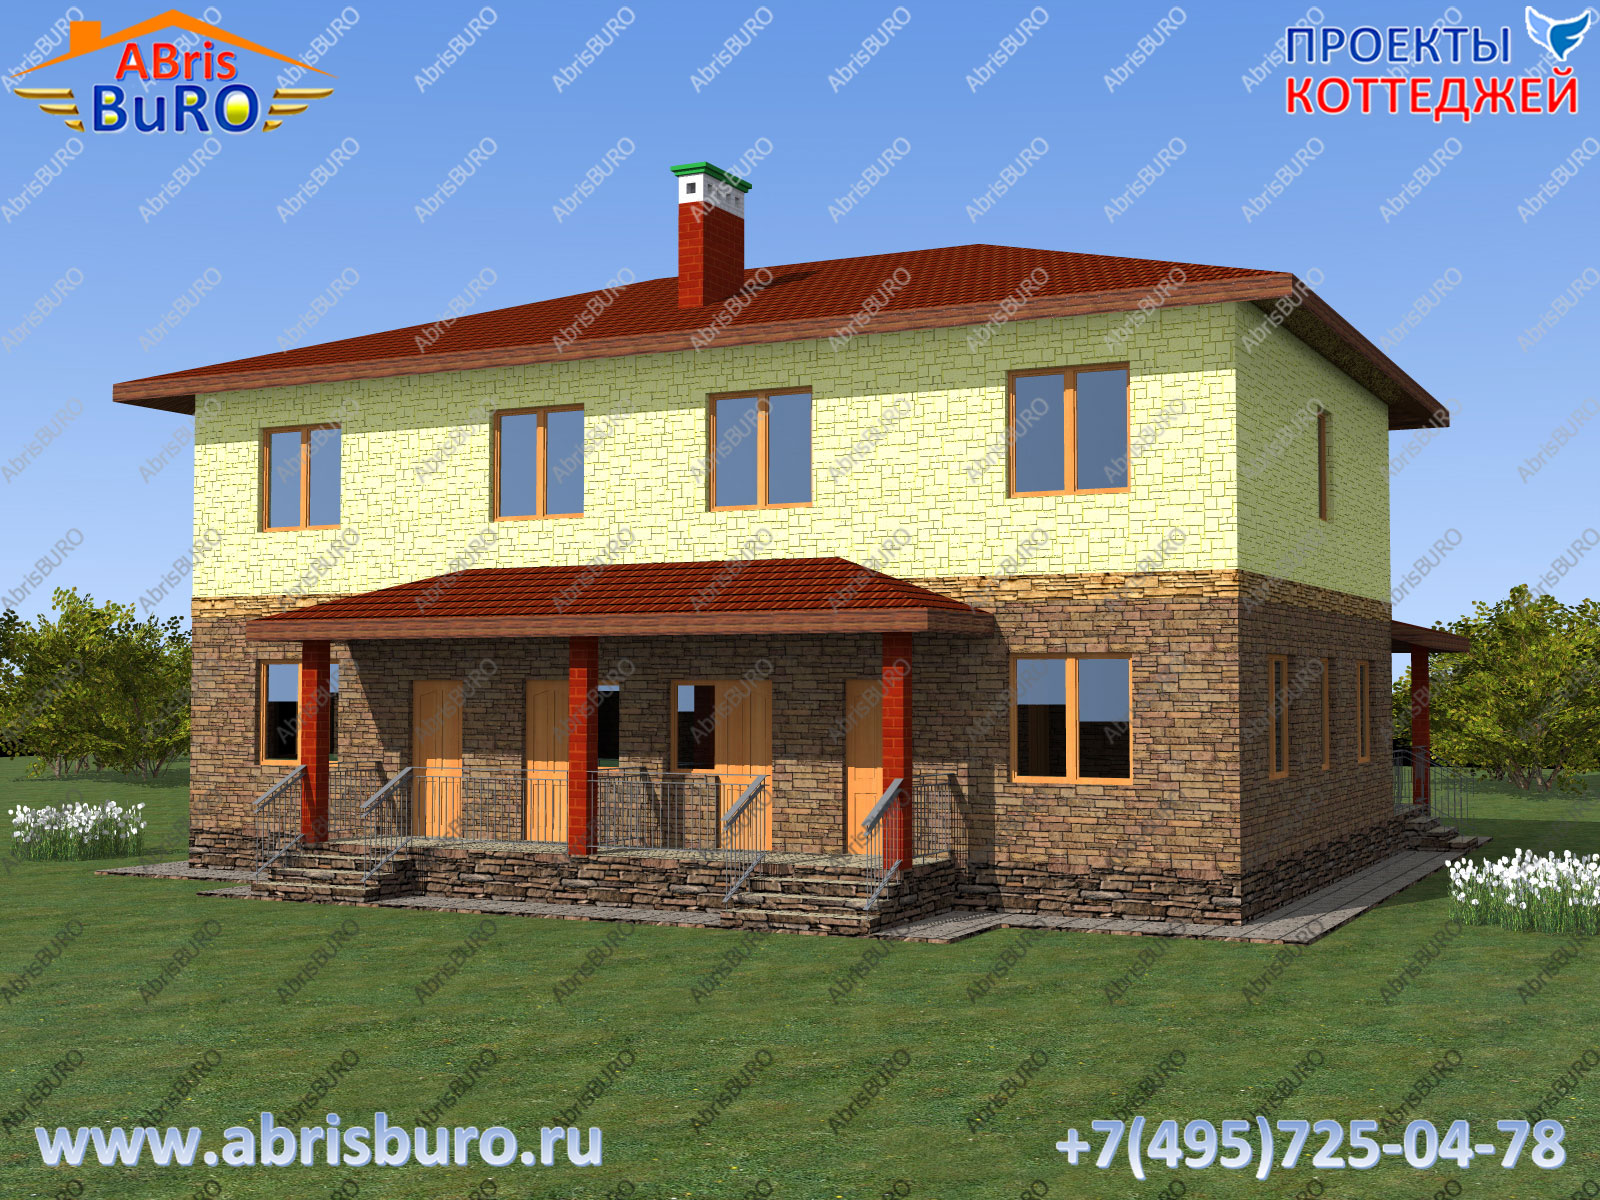 Сдвоенные коттеджи на сайте www.abrisburo.ru